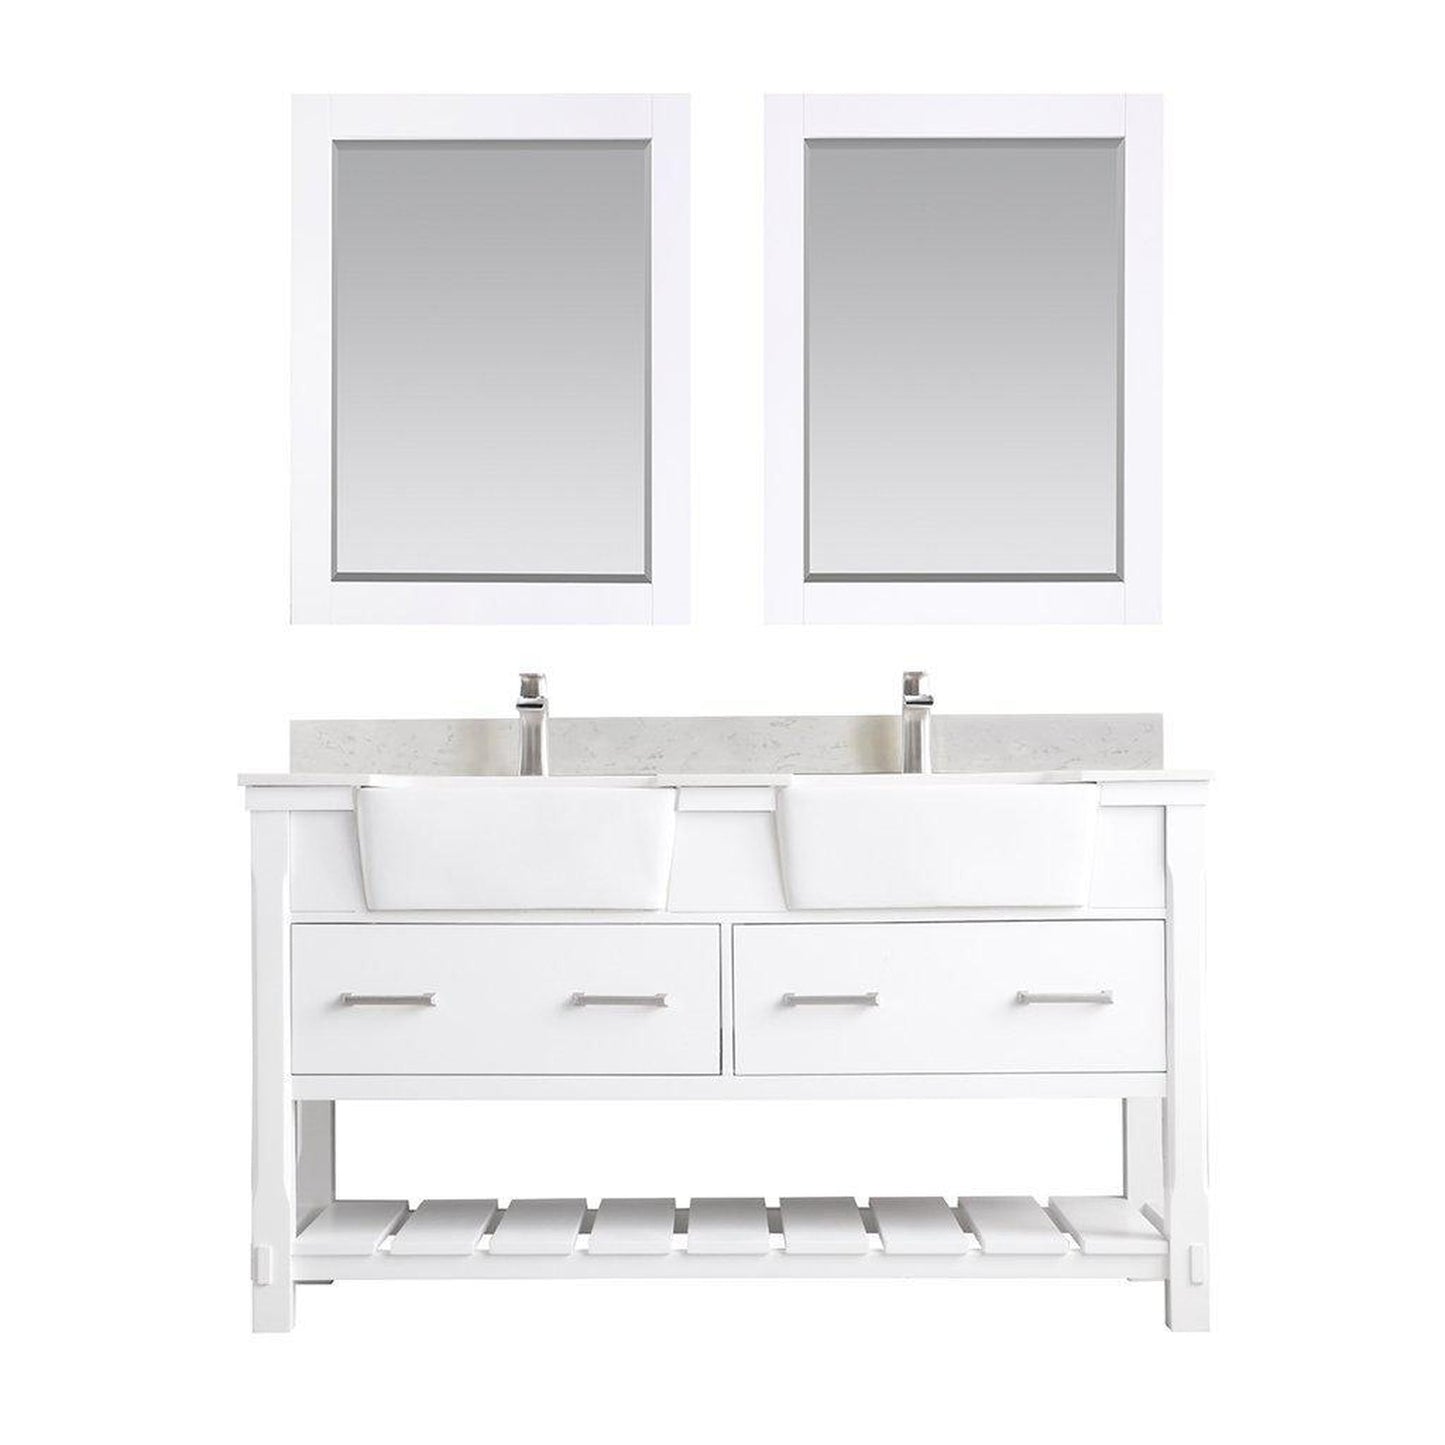 Altair Georgia 60" Double White Freestanding Bathroom Vanity Set With Mirror, Aosta White Composite Stone Top, Two Rectangular Farmhouse Sinks, Overflow, and Backsplash